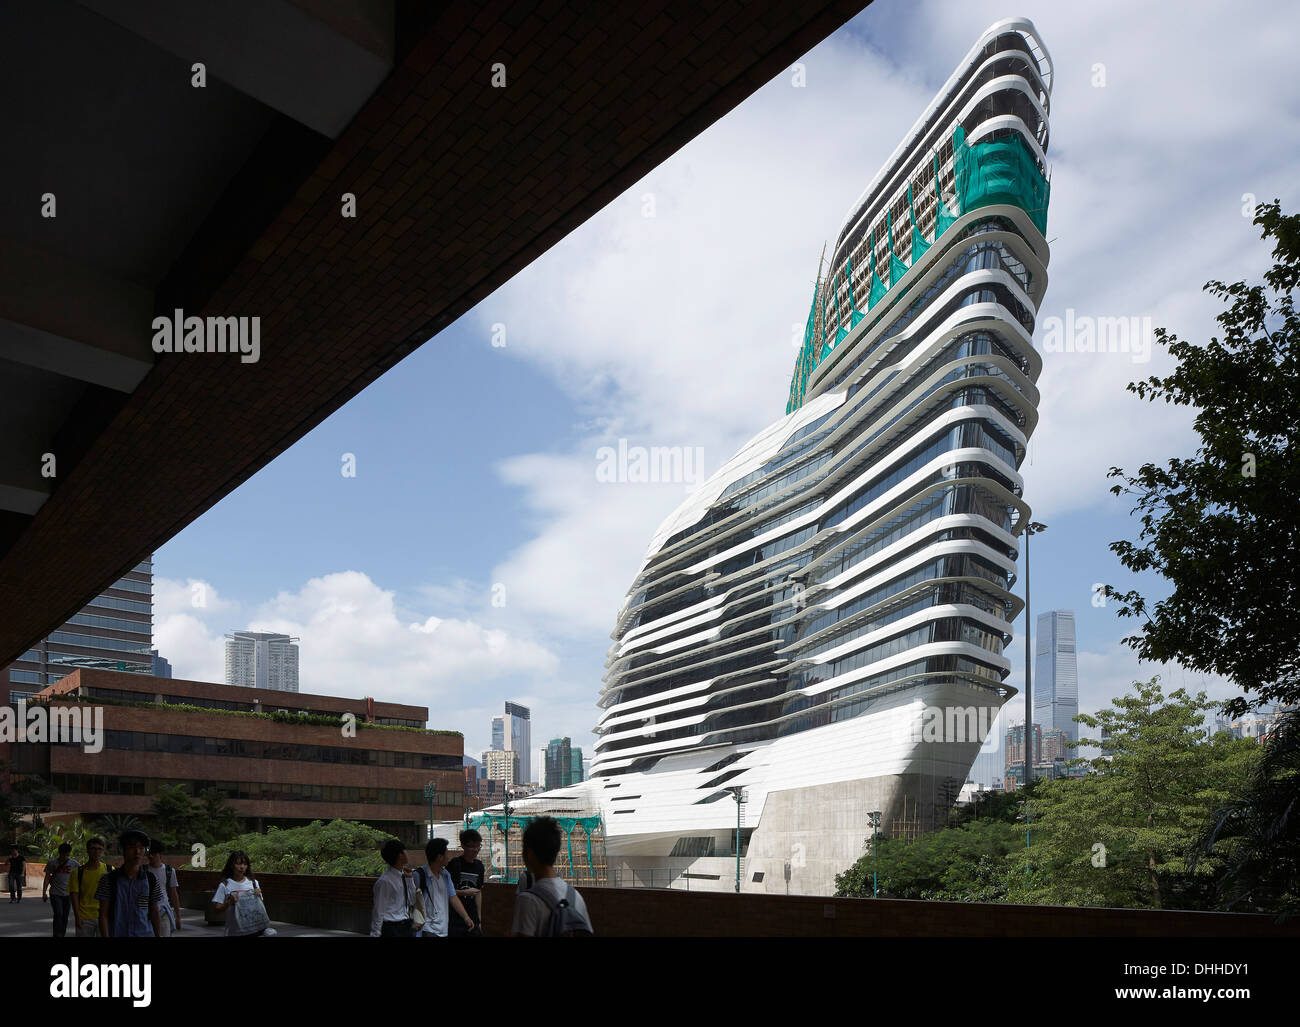 Innovation Tower, Kowloon, Hong Kong. Architect: Zaha Hadid Architects, 2013. Stock Photo